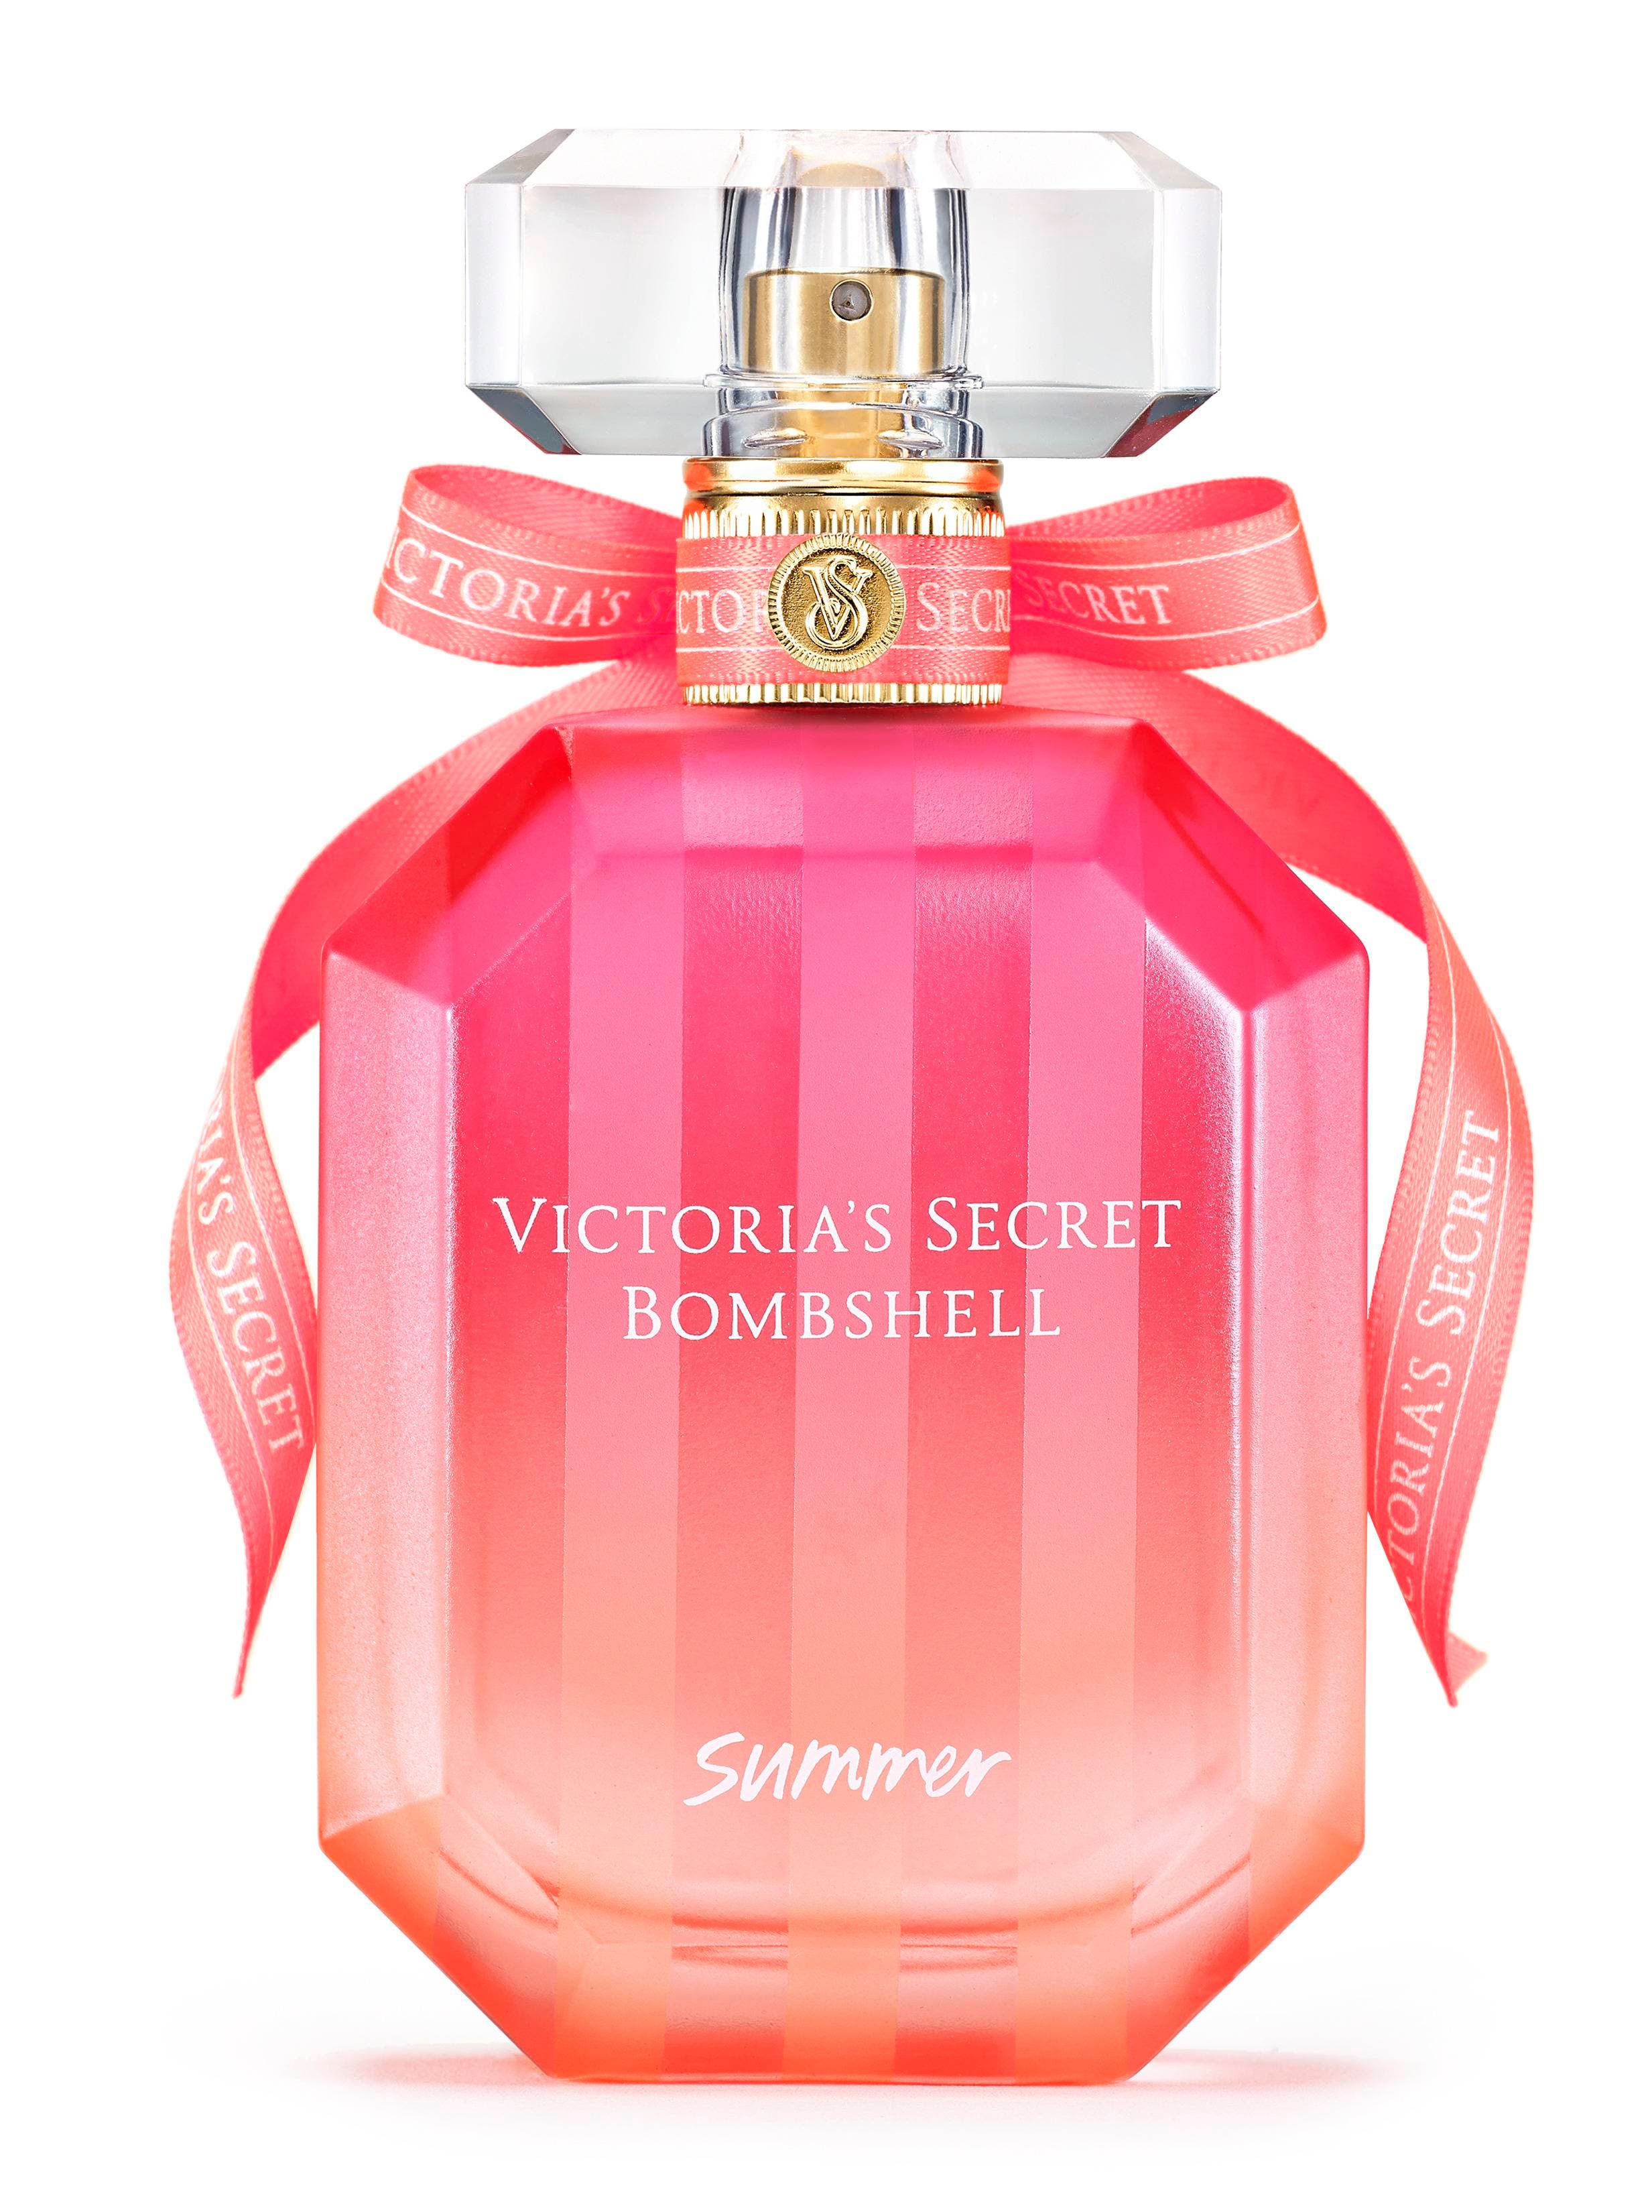 Victoria’s Secret presenta una edición especial de Bombshell